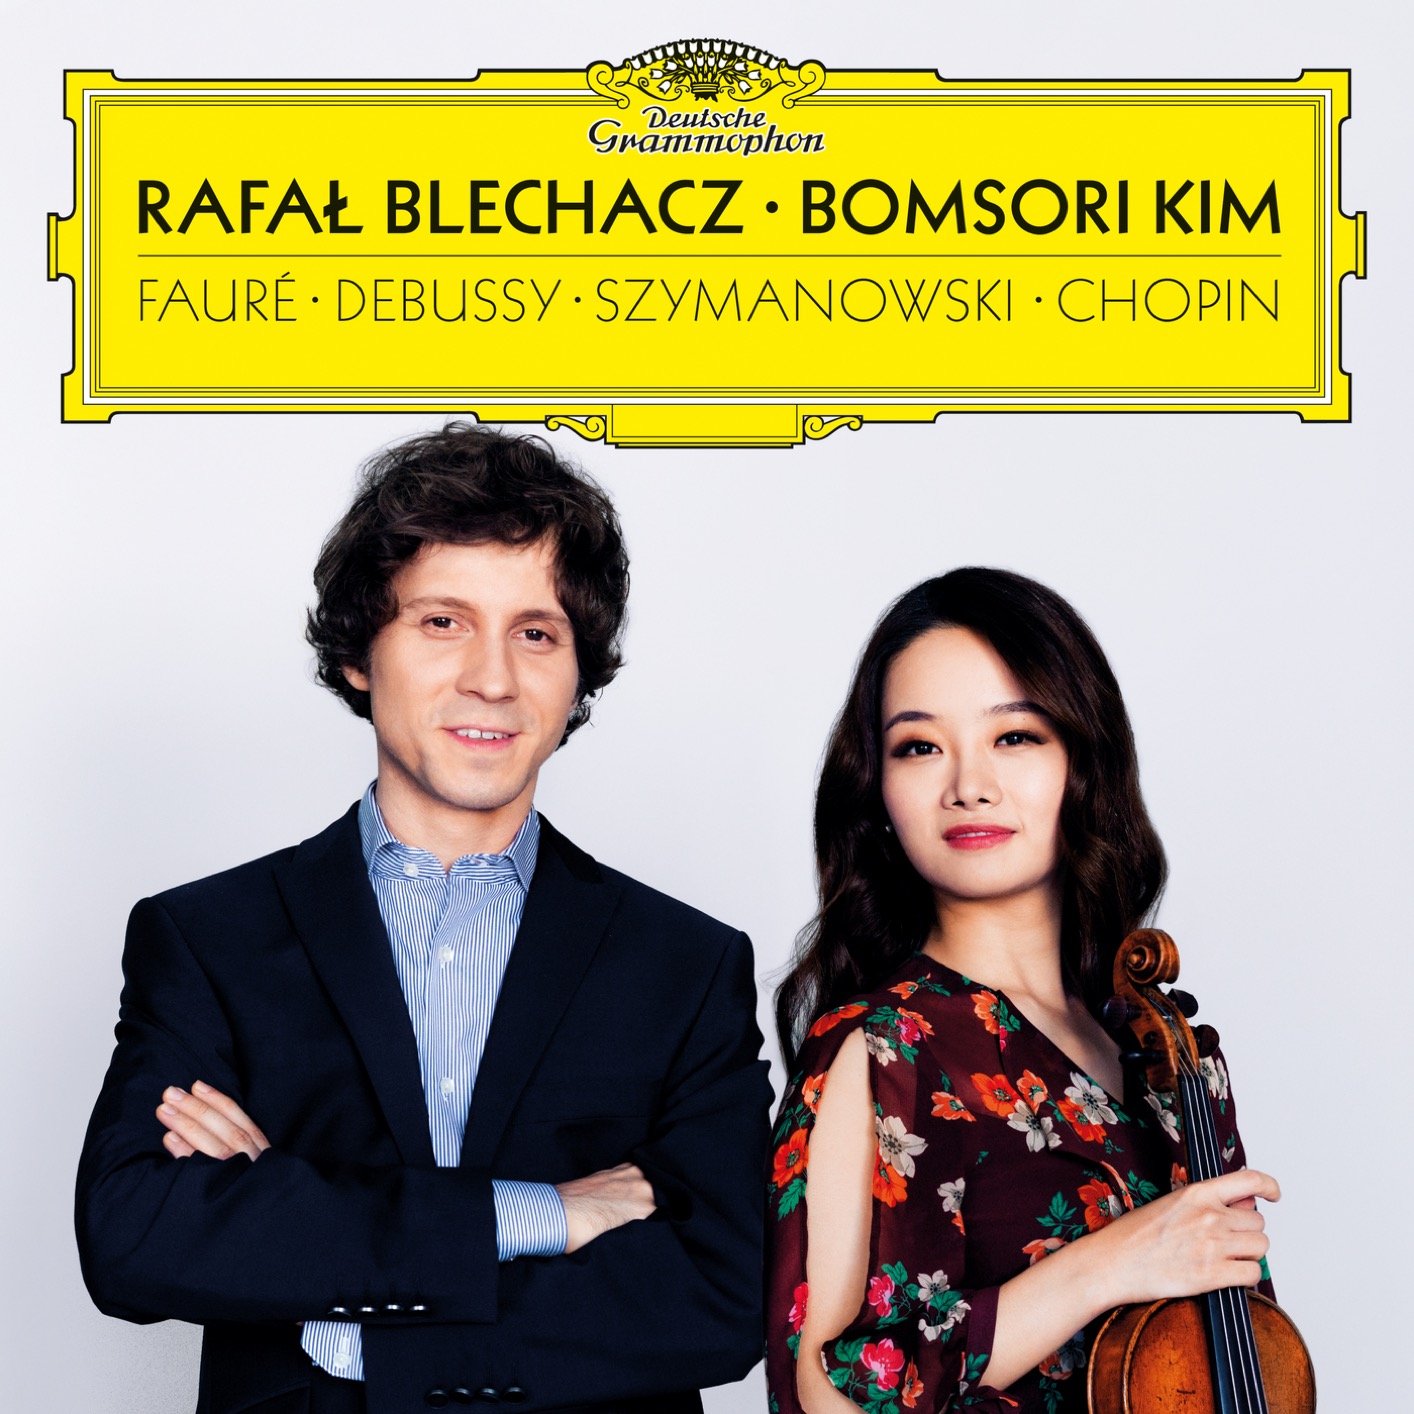 Bomsori Kim & Rafal Blechacz - Faure, Debussy, Szymanowski, Chopin (2019) [FLAC 24bit/96kHz]